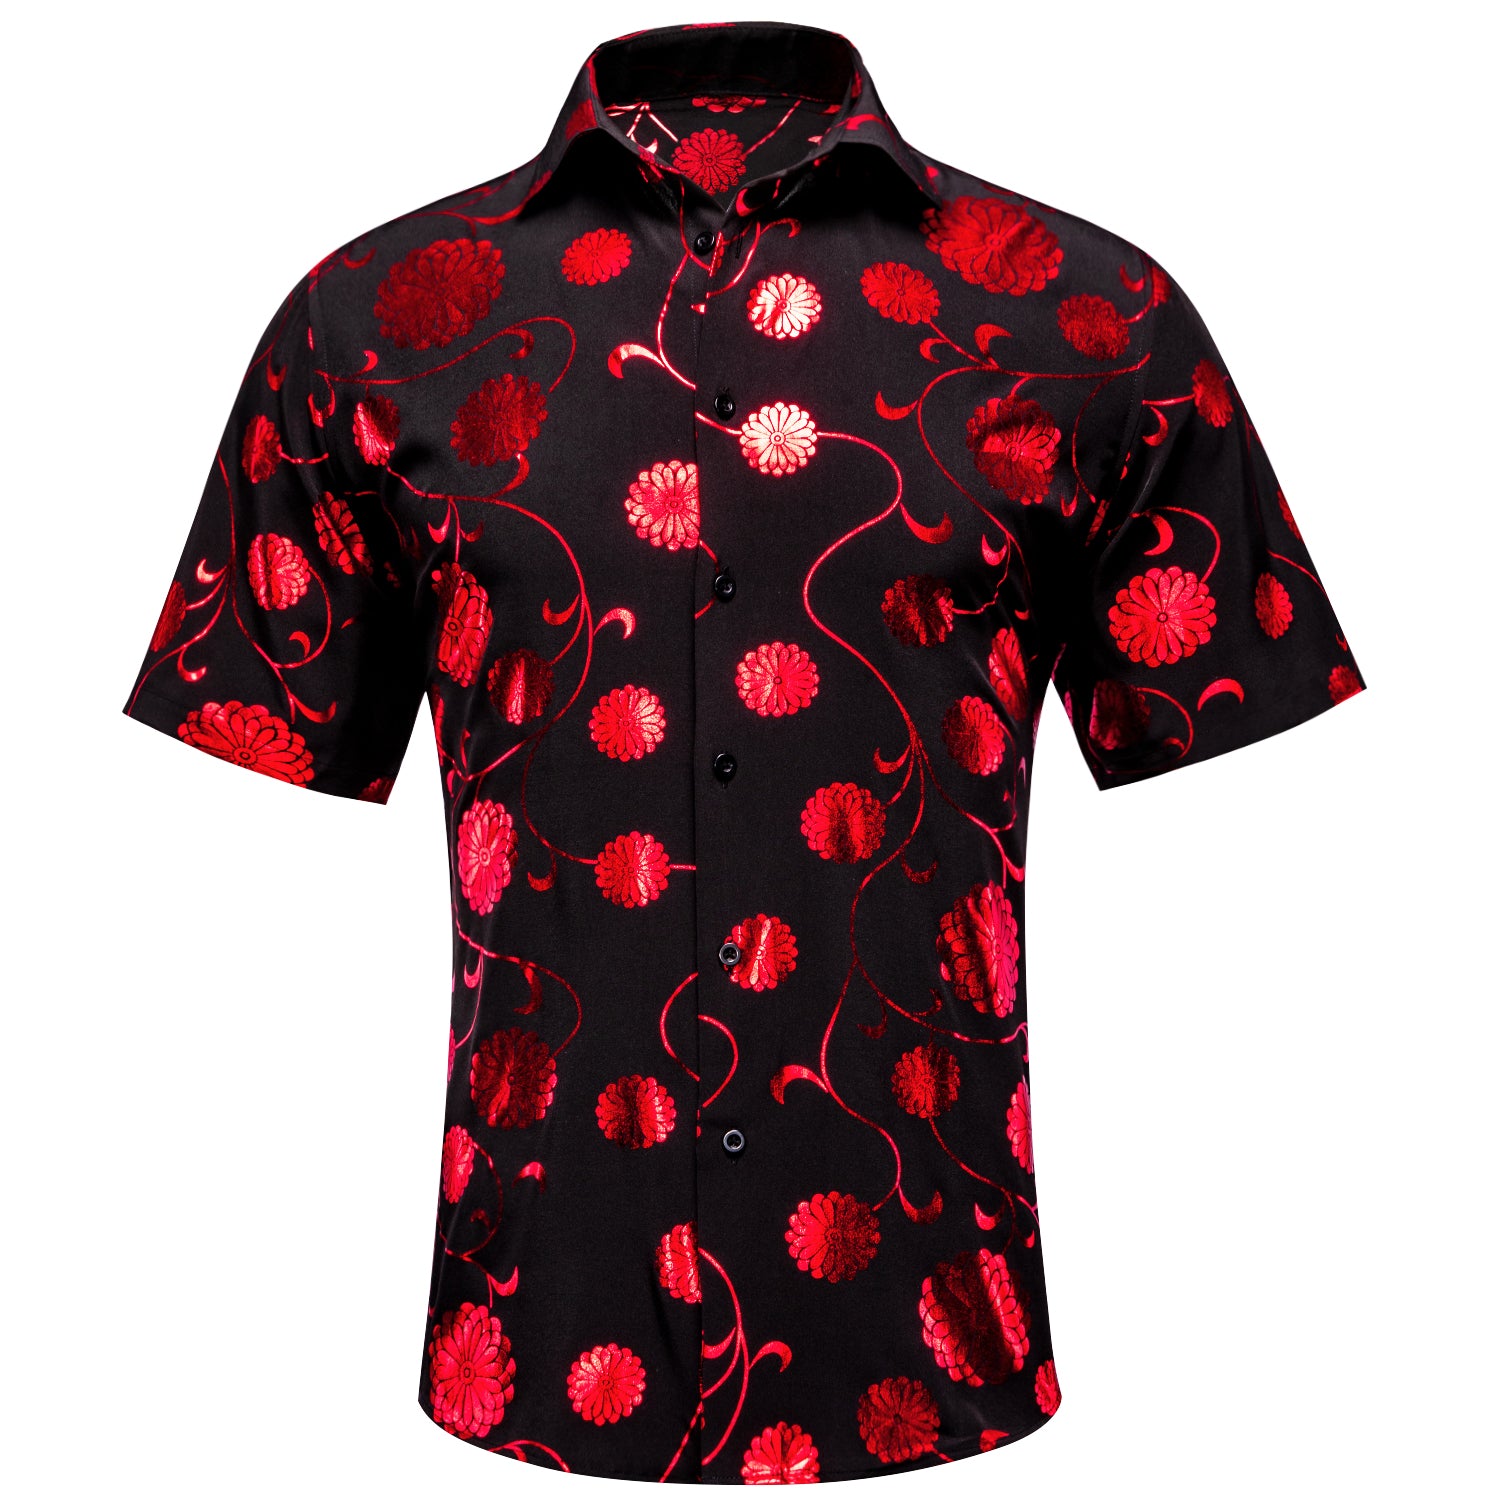 New Black Red Flower Men's Short Sleeve Shirt